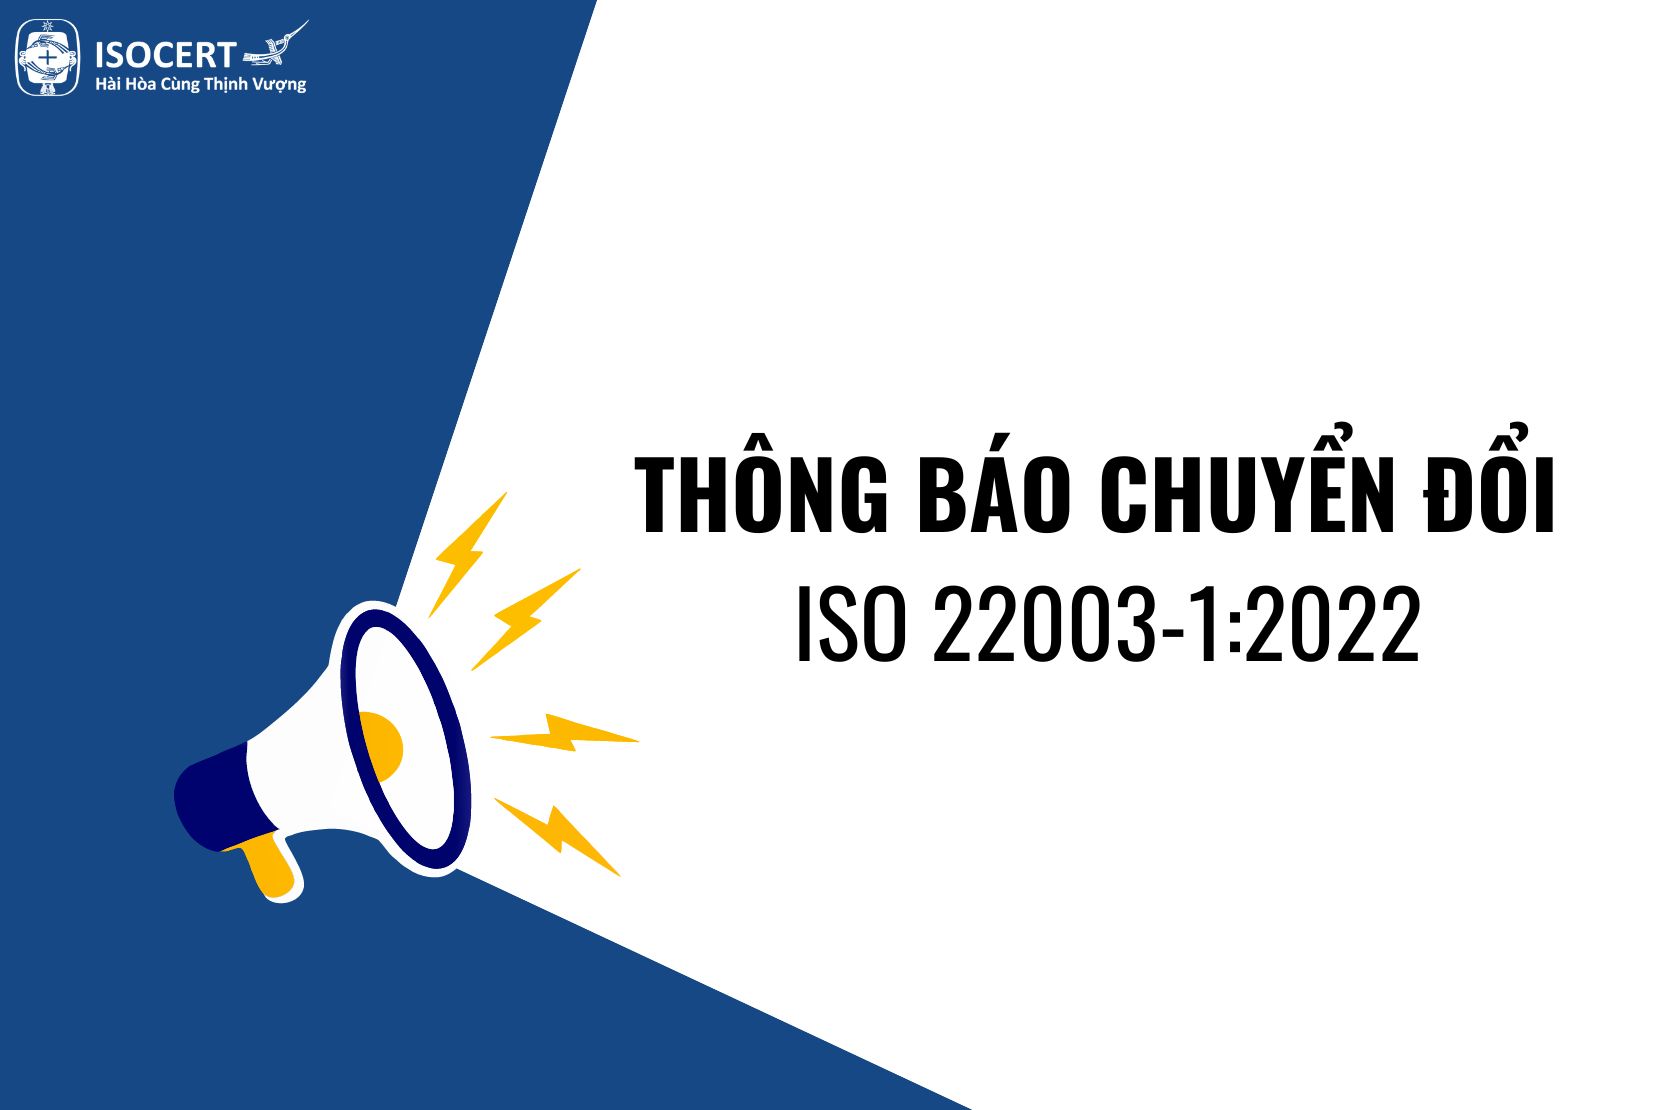 Thông báo chuyển đổi ISO 22003-1:2022, thay thế ISO/TS 22003:2013